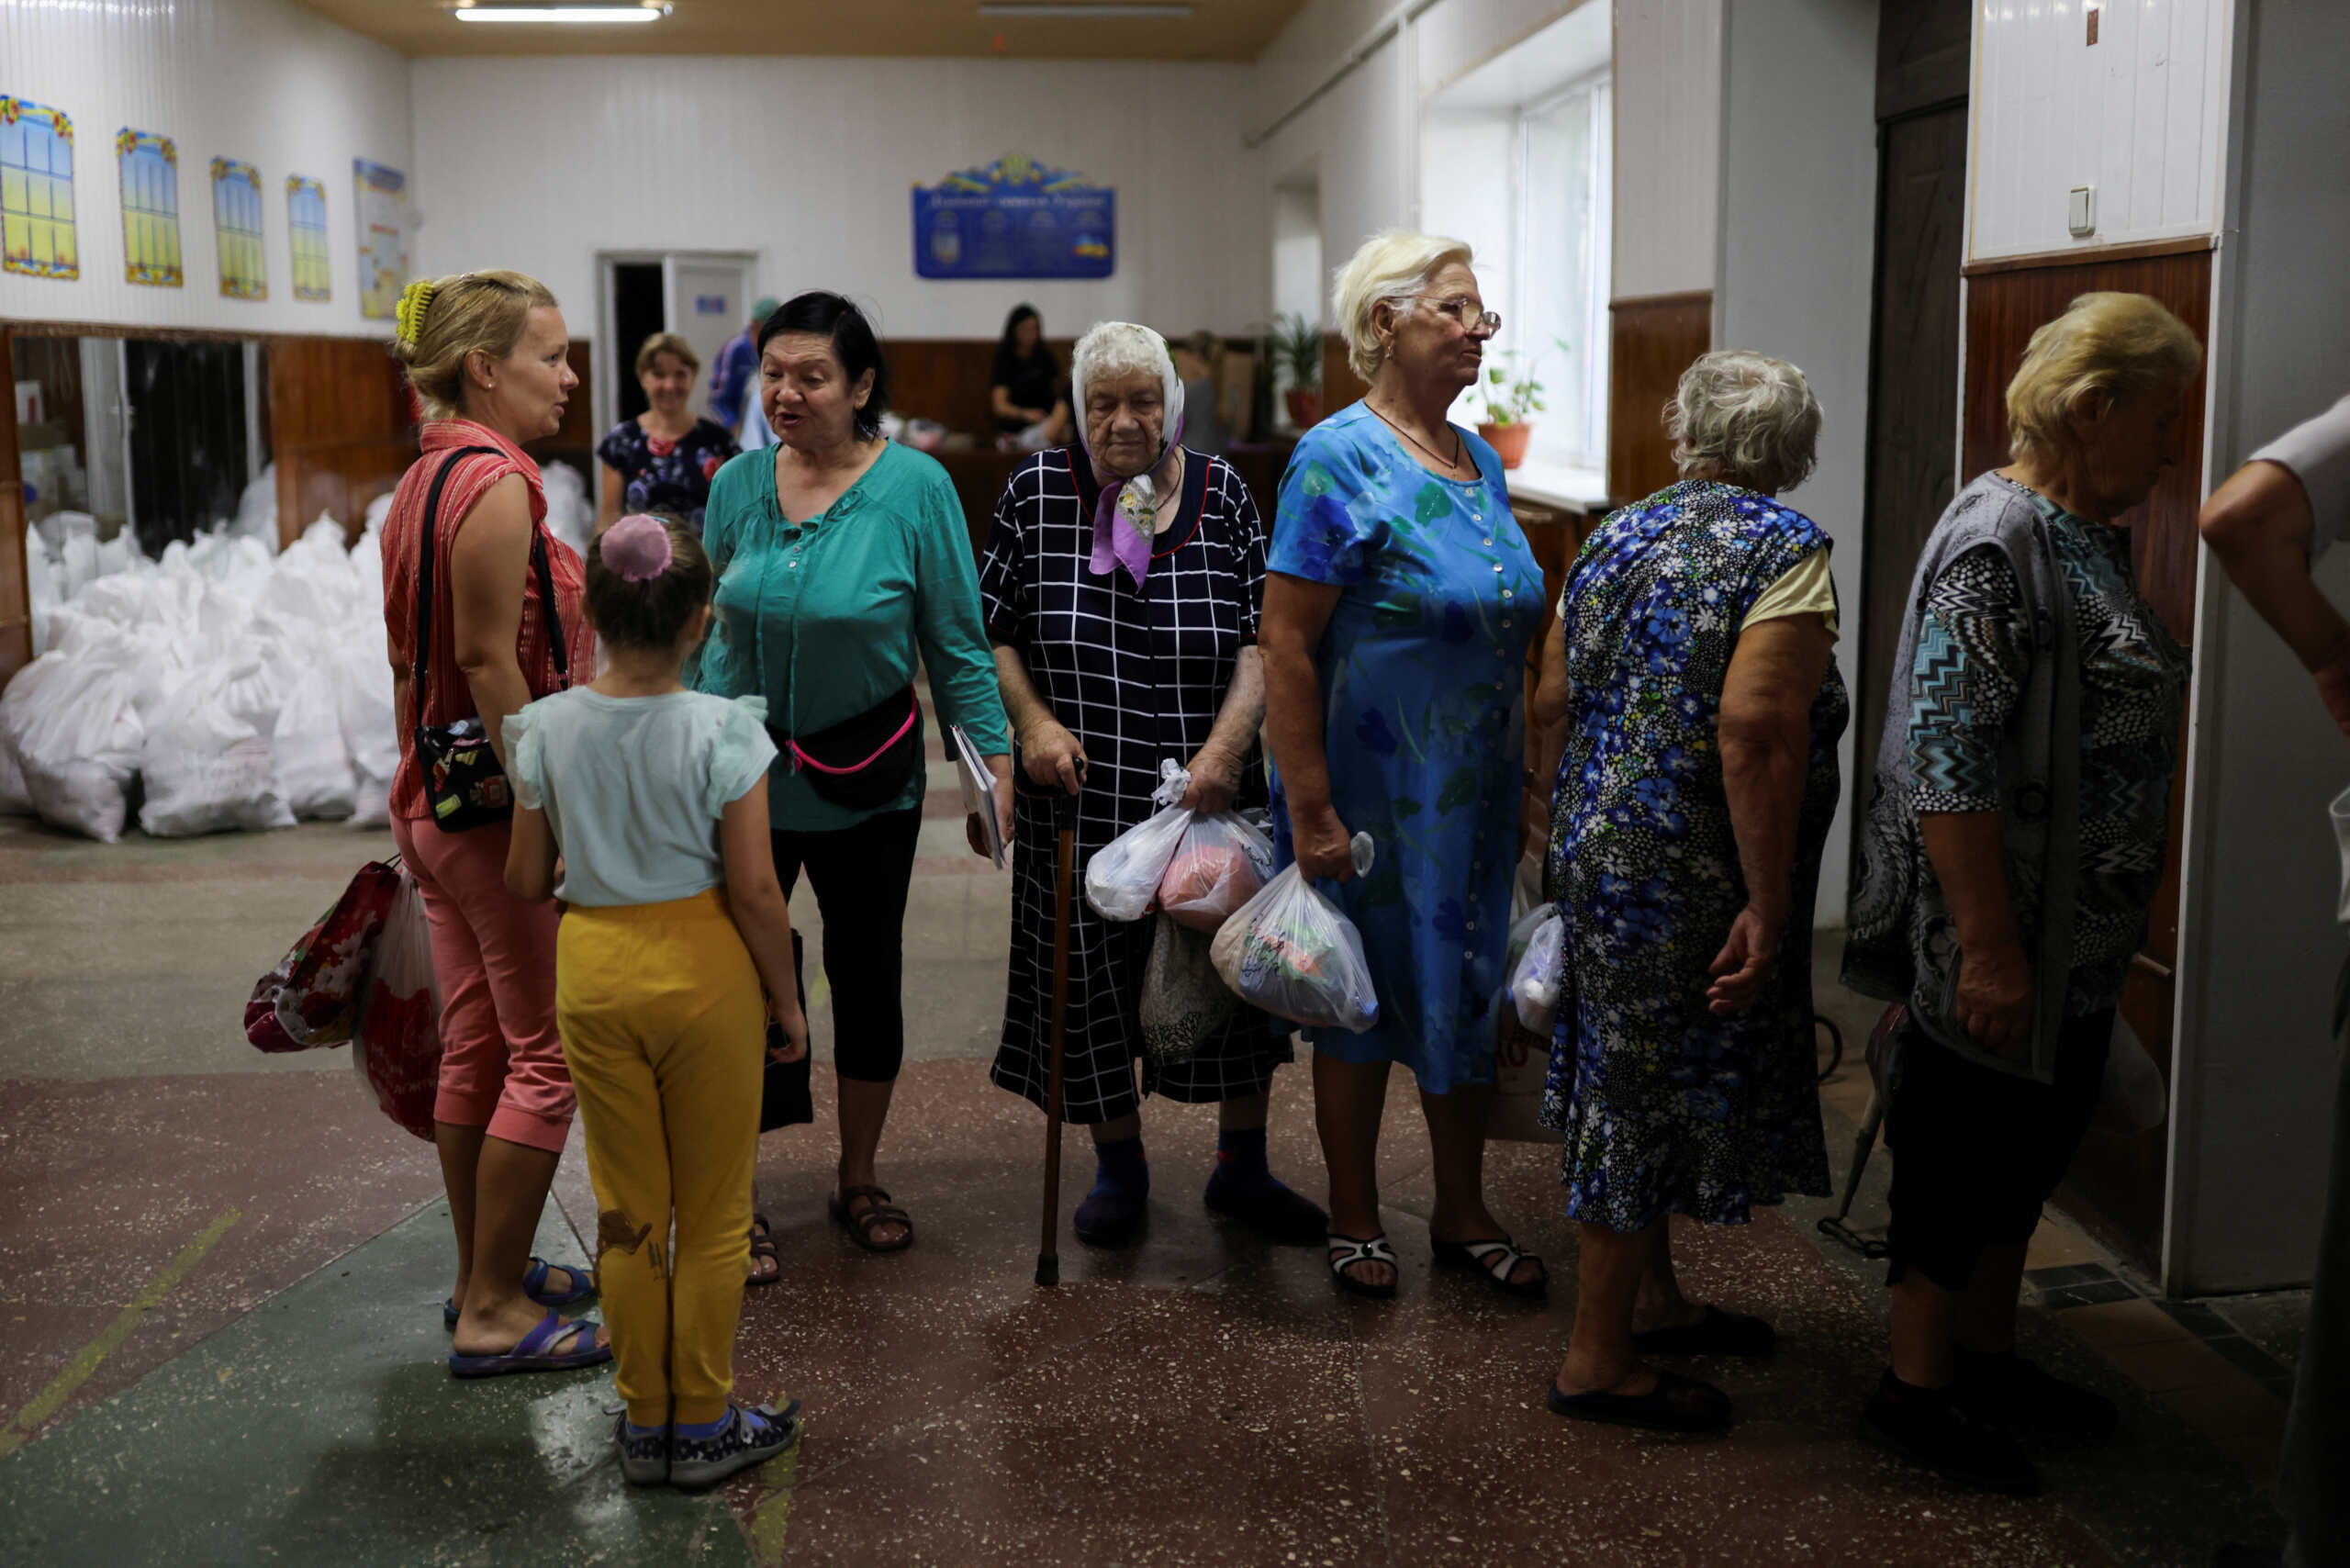 Διακοπές για 600 παιδιά από την Ουκρανία σε ελληνικές κατασκηνώσεις το καλοκαίρι